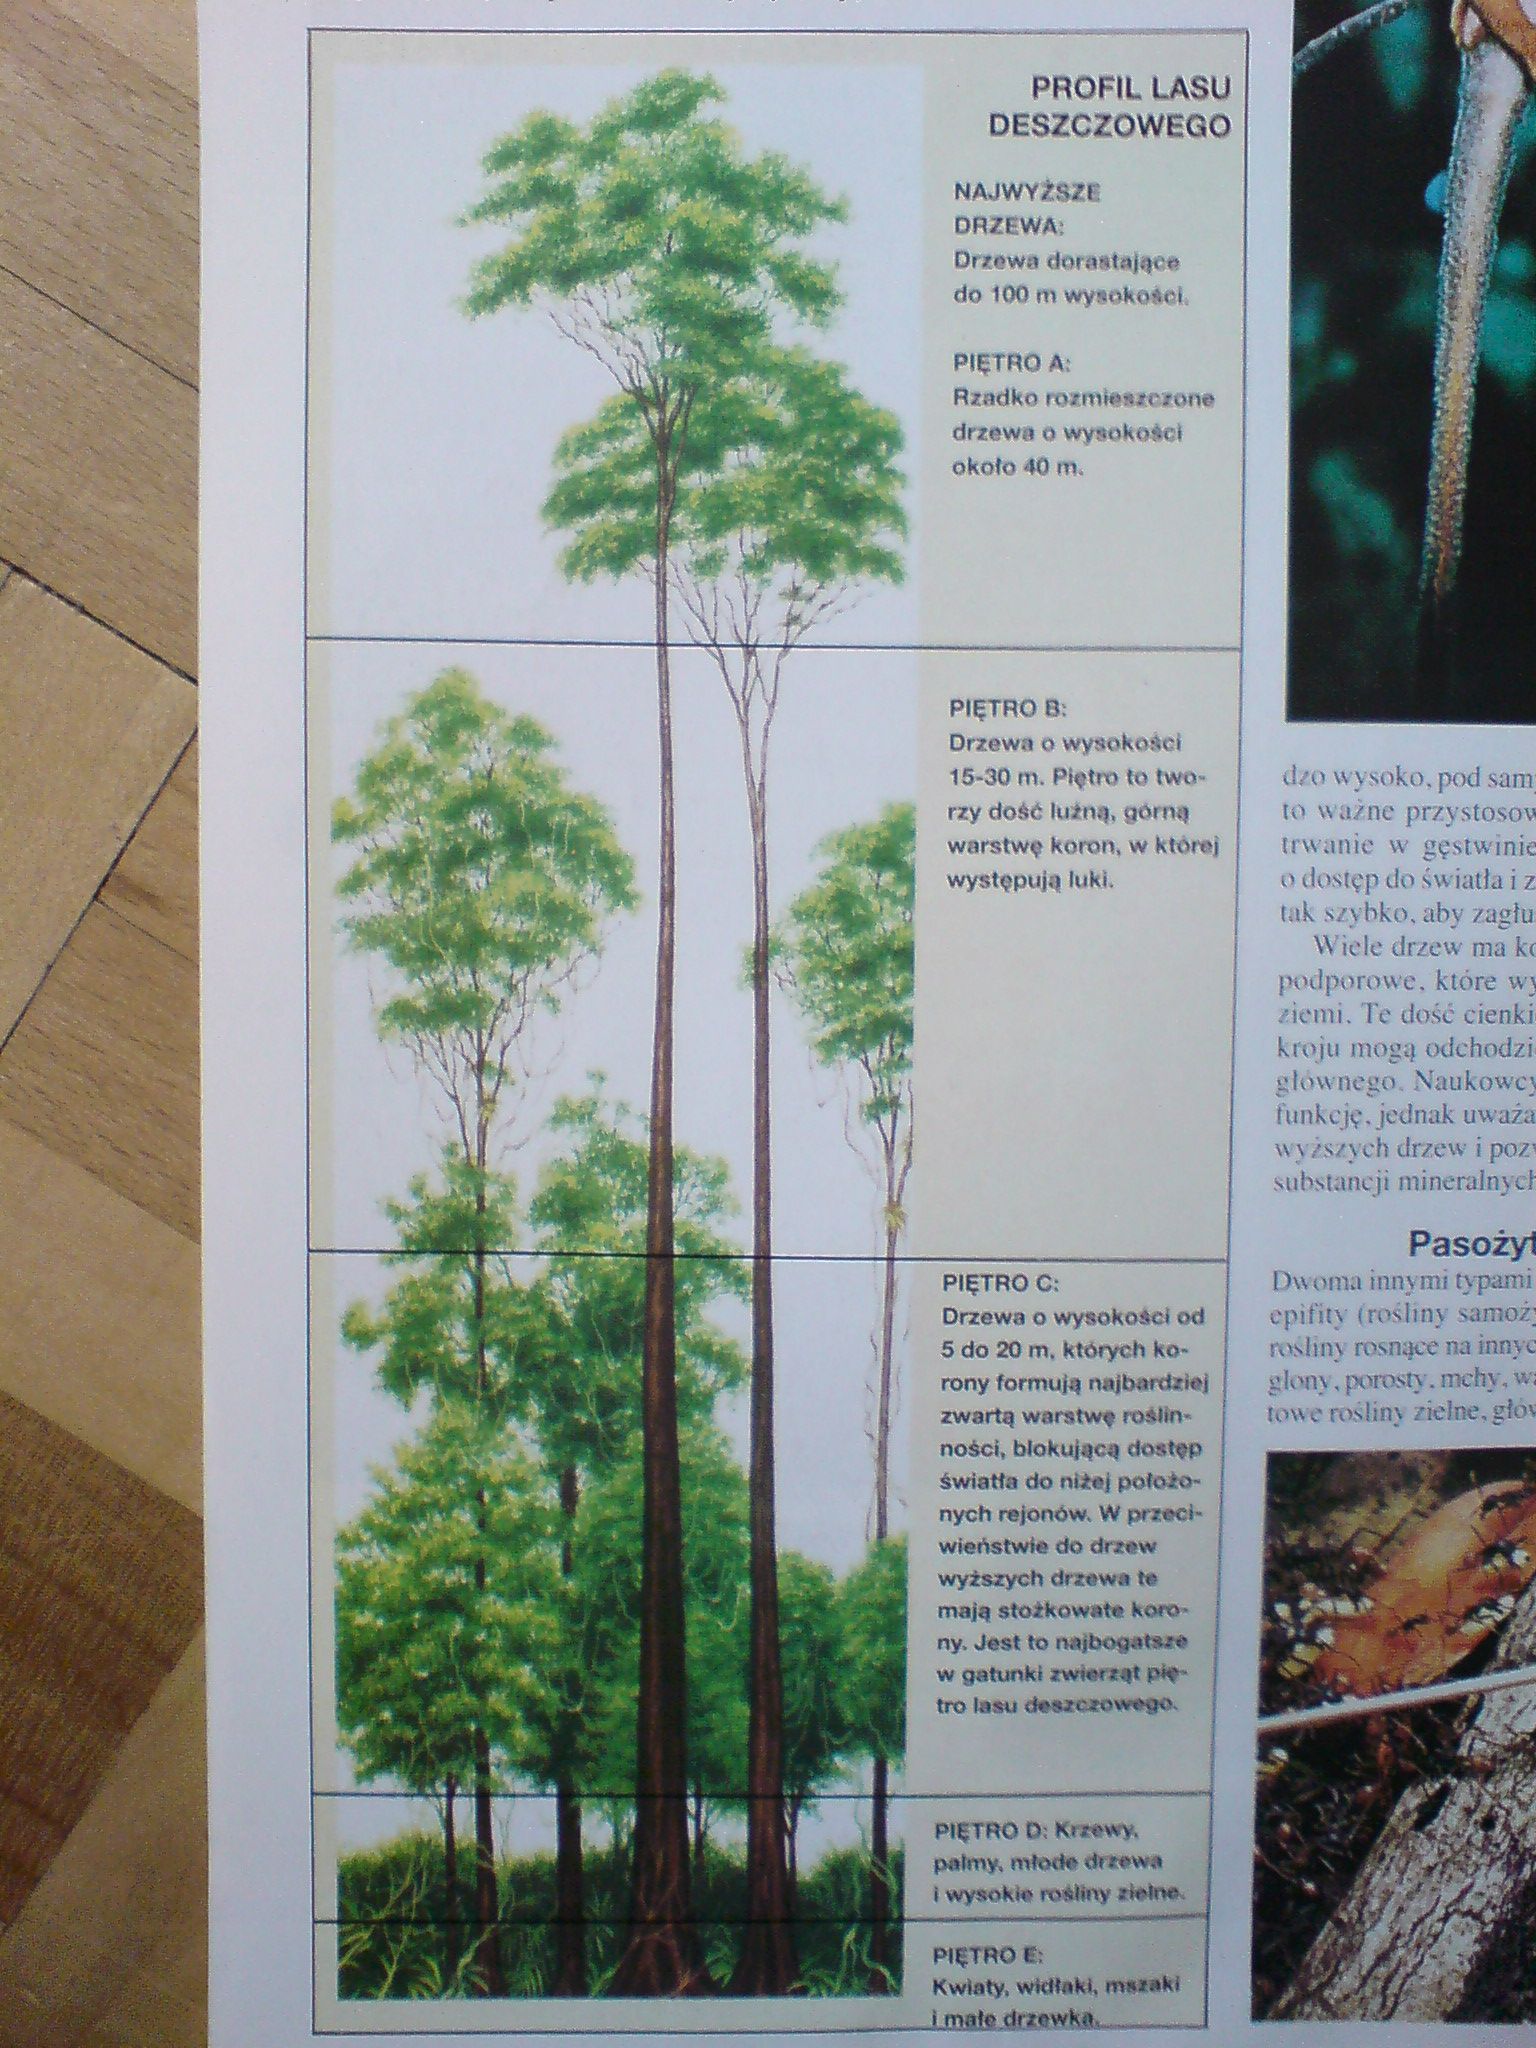 Biologia - profil lasu deszczowego układ piętrowy.JPG